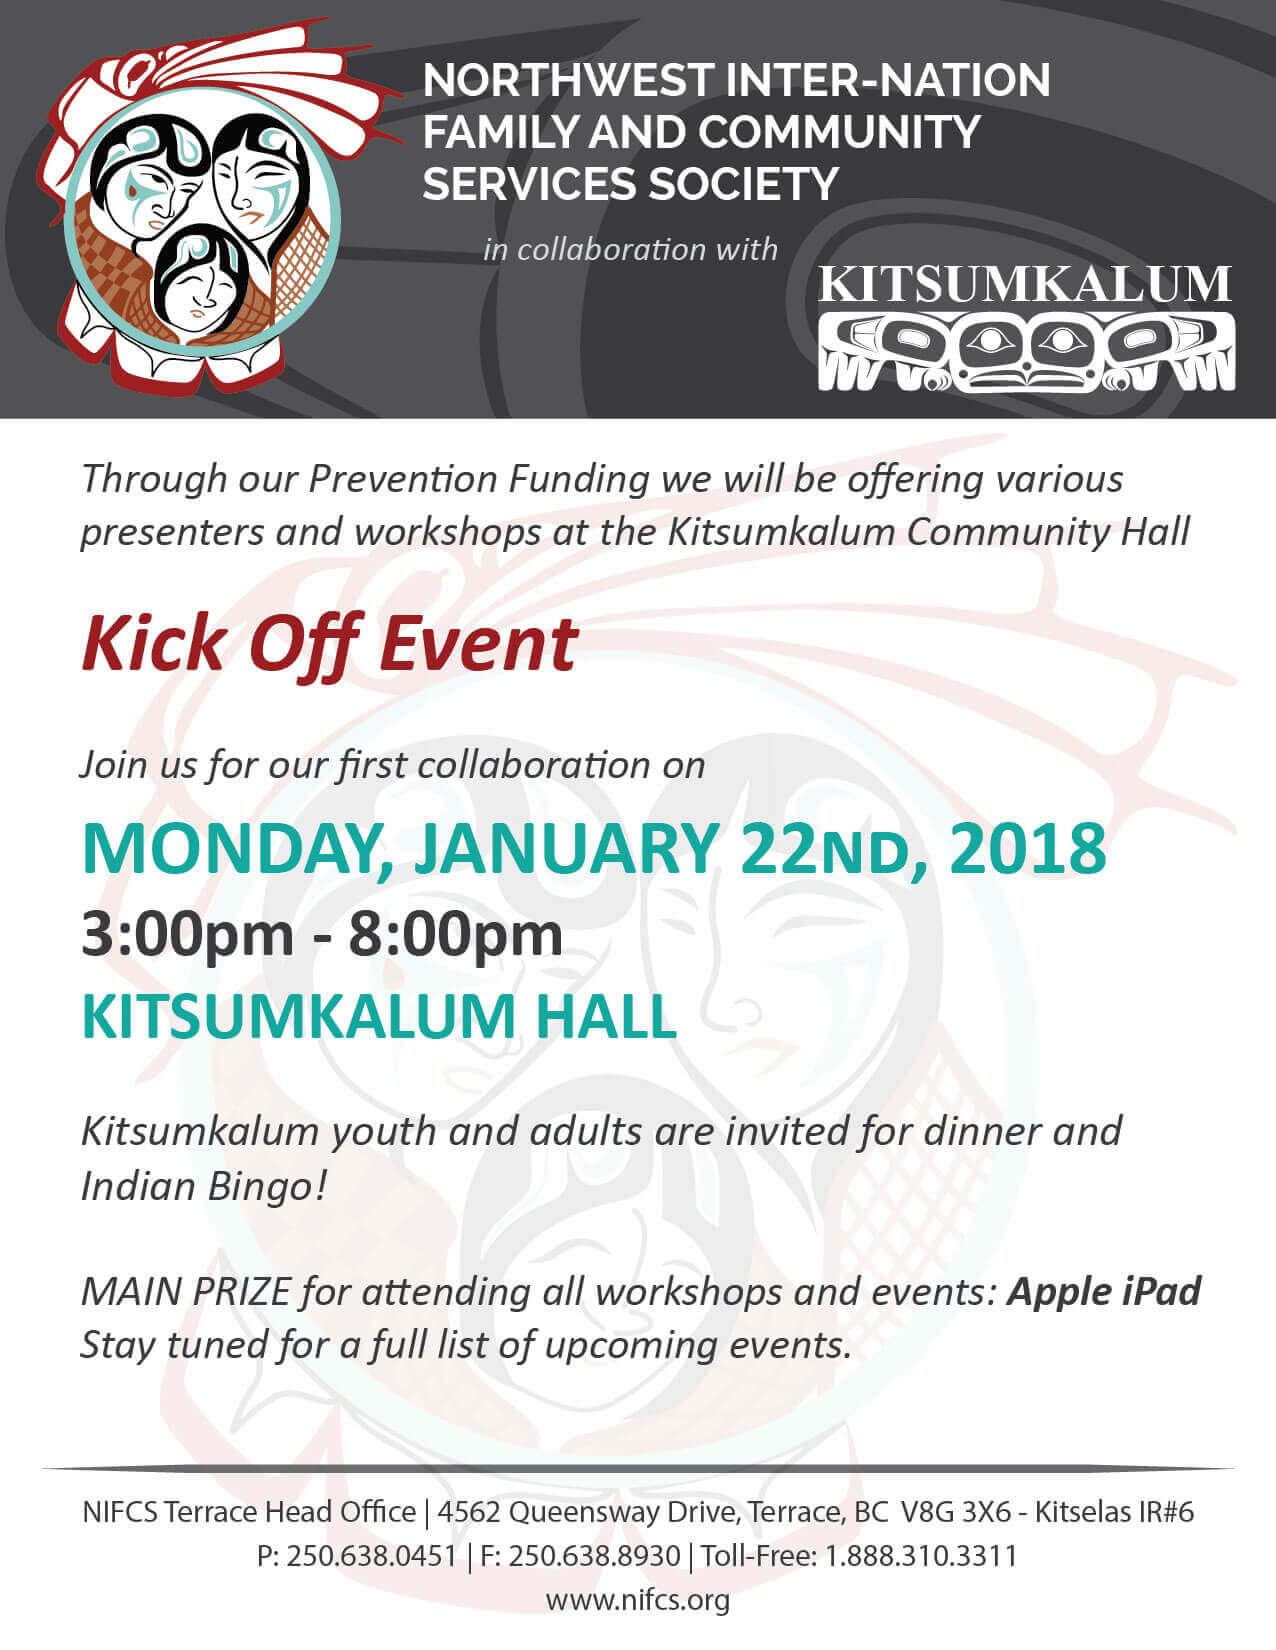 NIFCS and Kitsumkalum Kick Off Event Jan 22nd